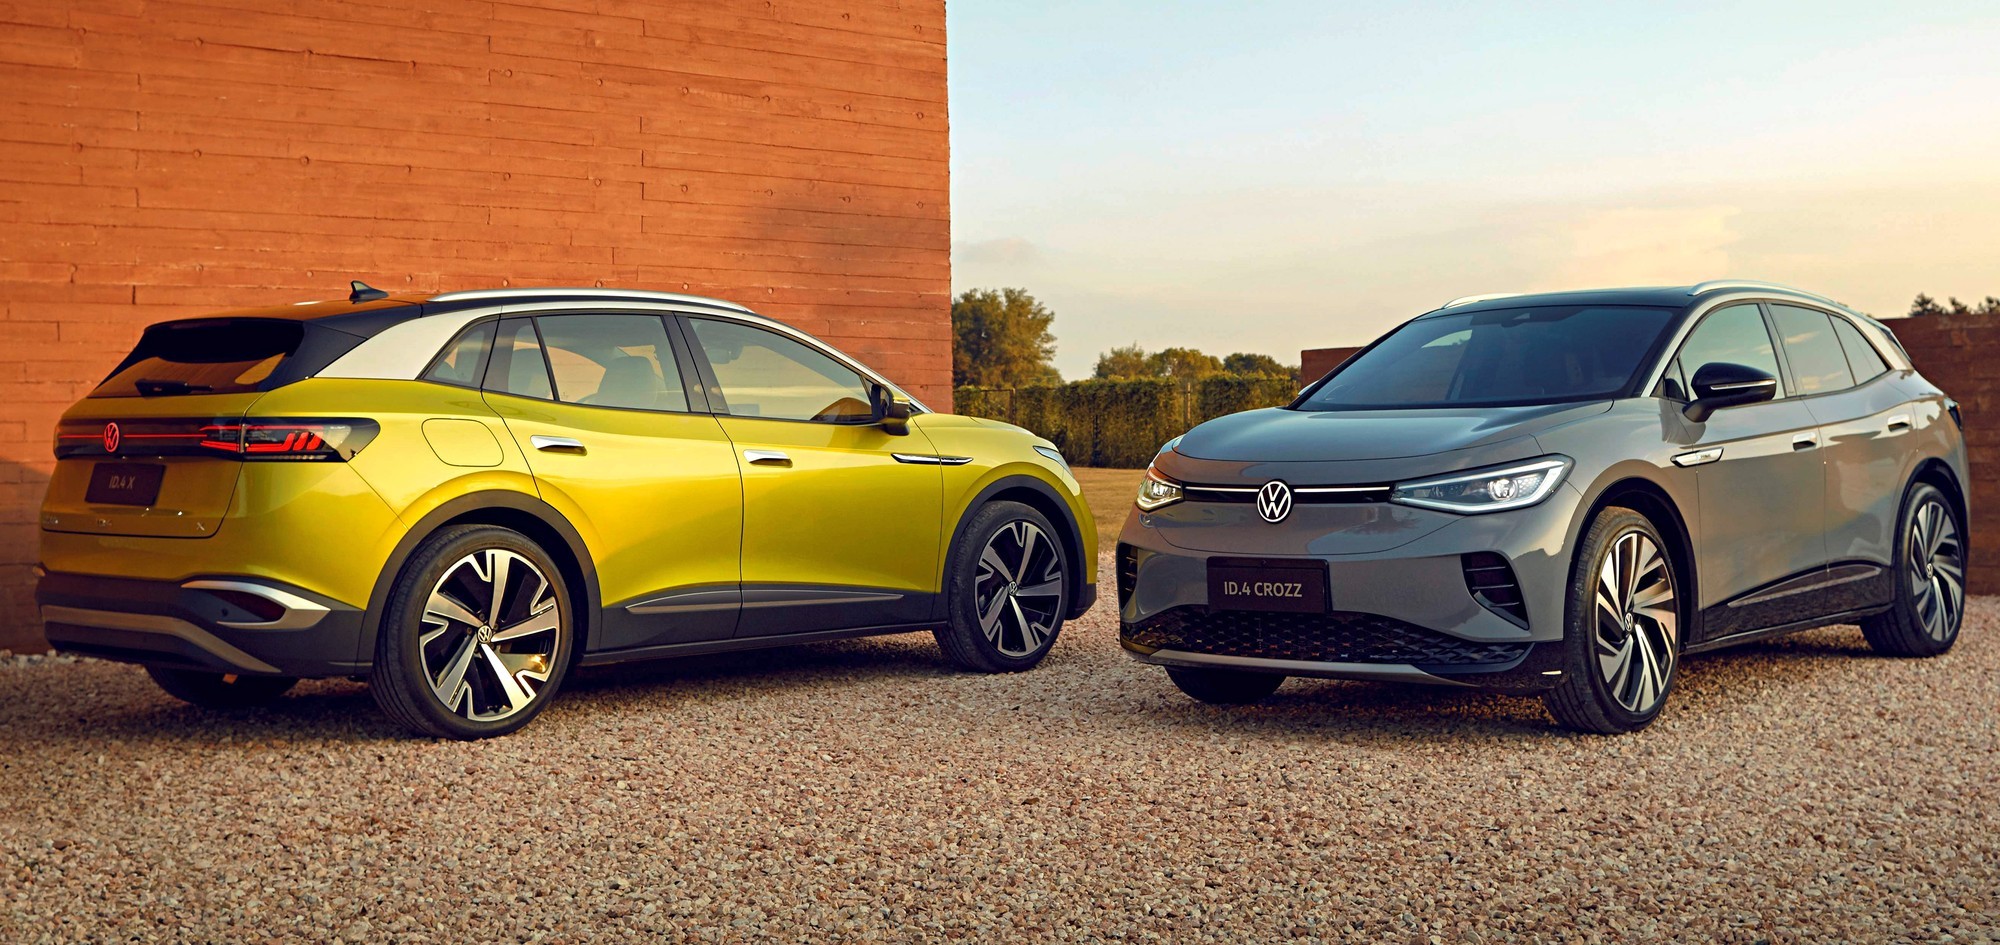 VW ID.4 плохо продаётся в Китае, два завода для его производства — явный перебор